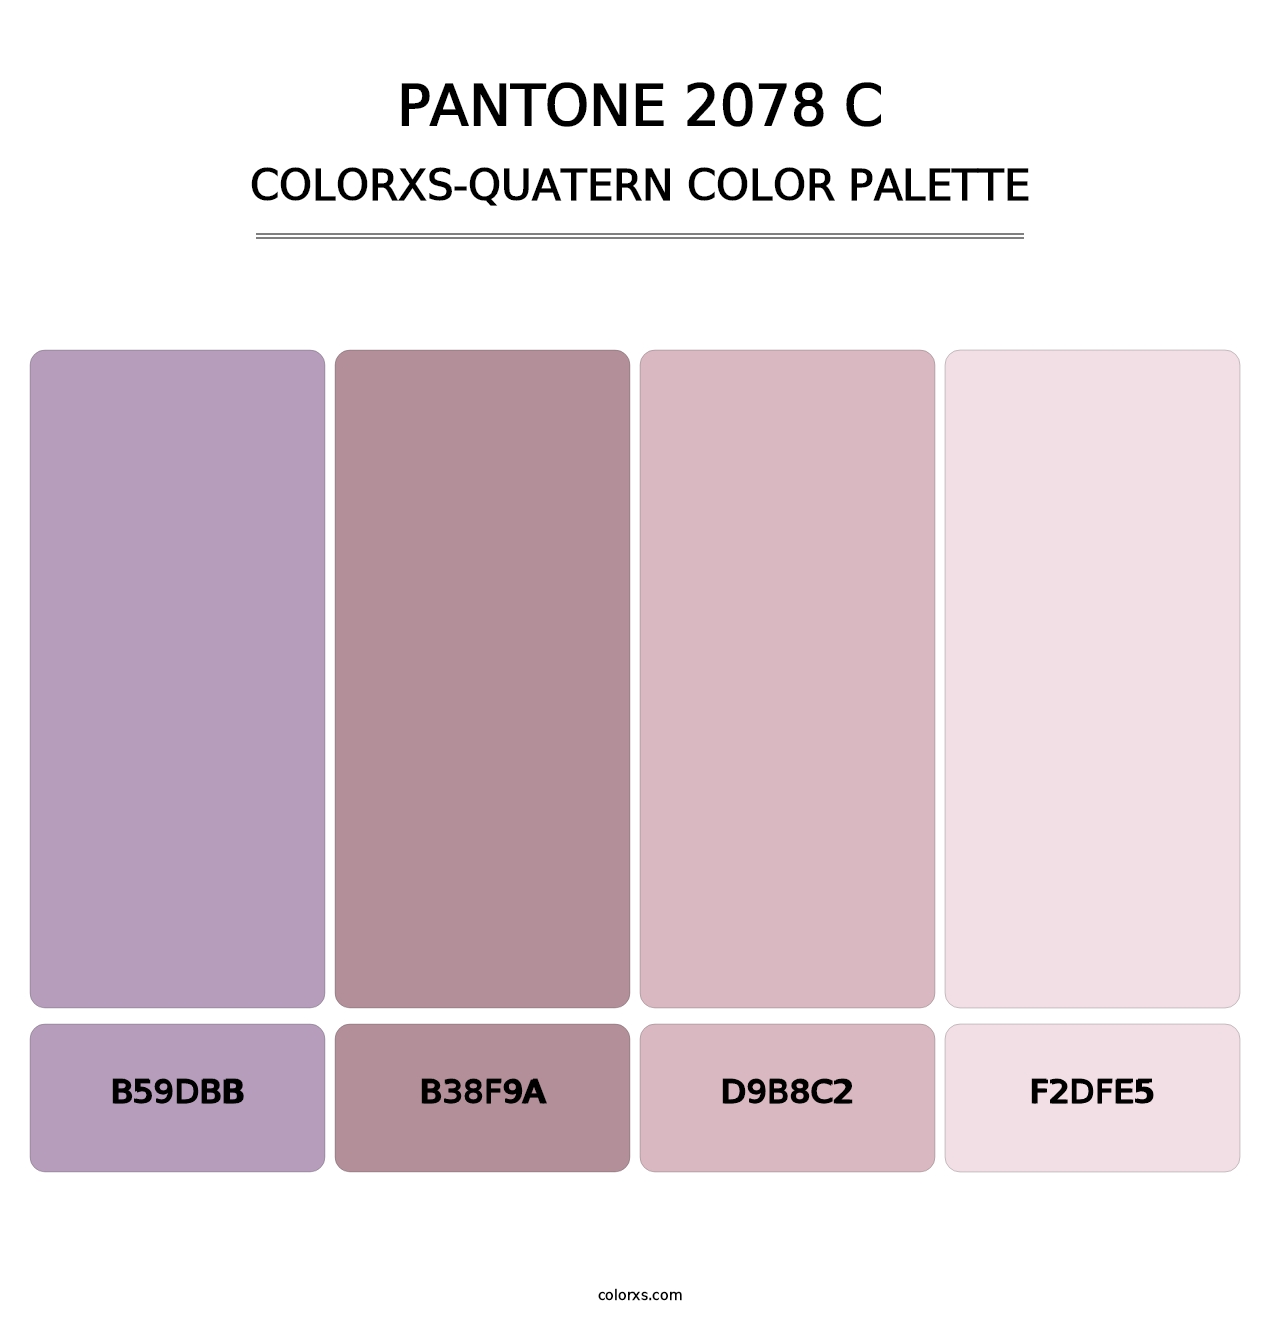 PANTONE 2078 C - Colorxs Quatern Palette